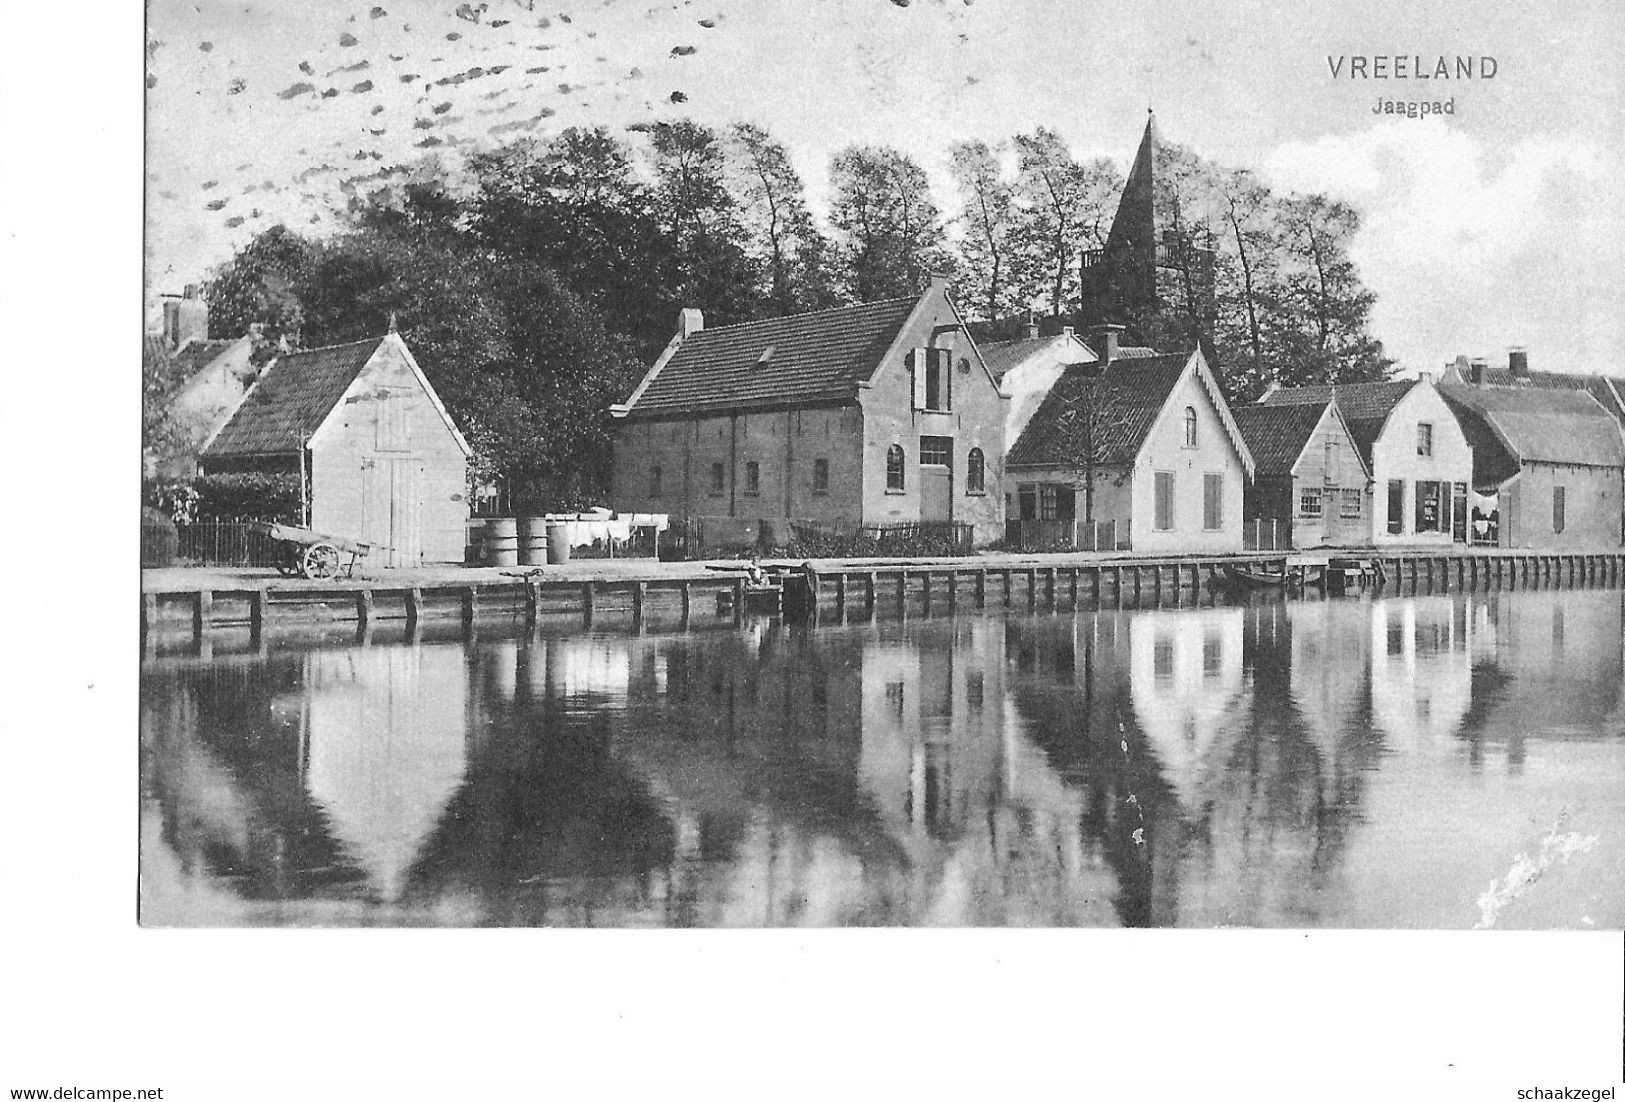 Vreeland	Jaagpad, 1909		VR 088 - Vreeland